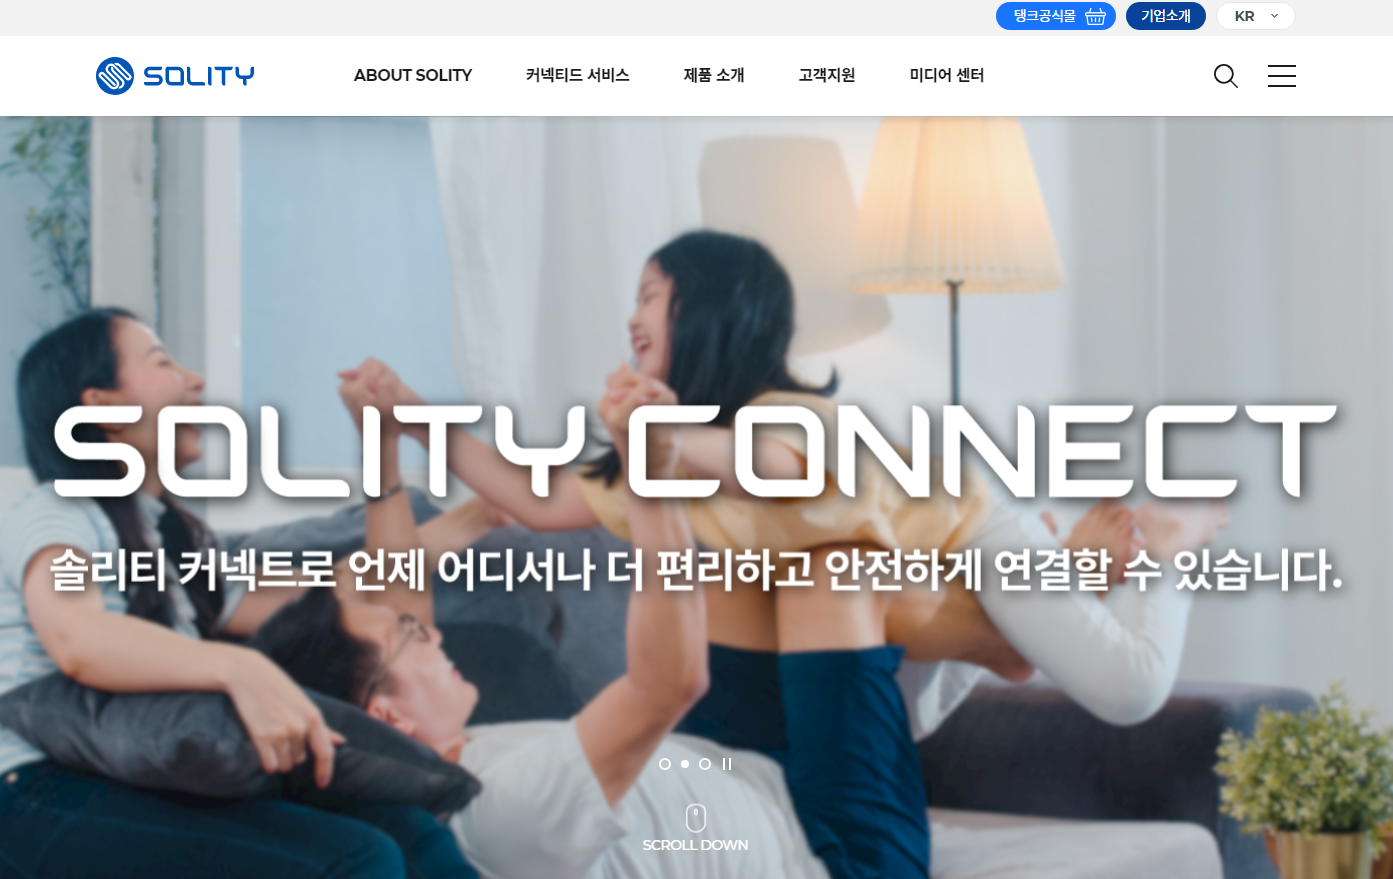 솔리티 도어락 고객센터 (www.solitykorea.com)